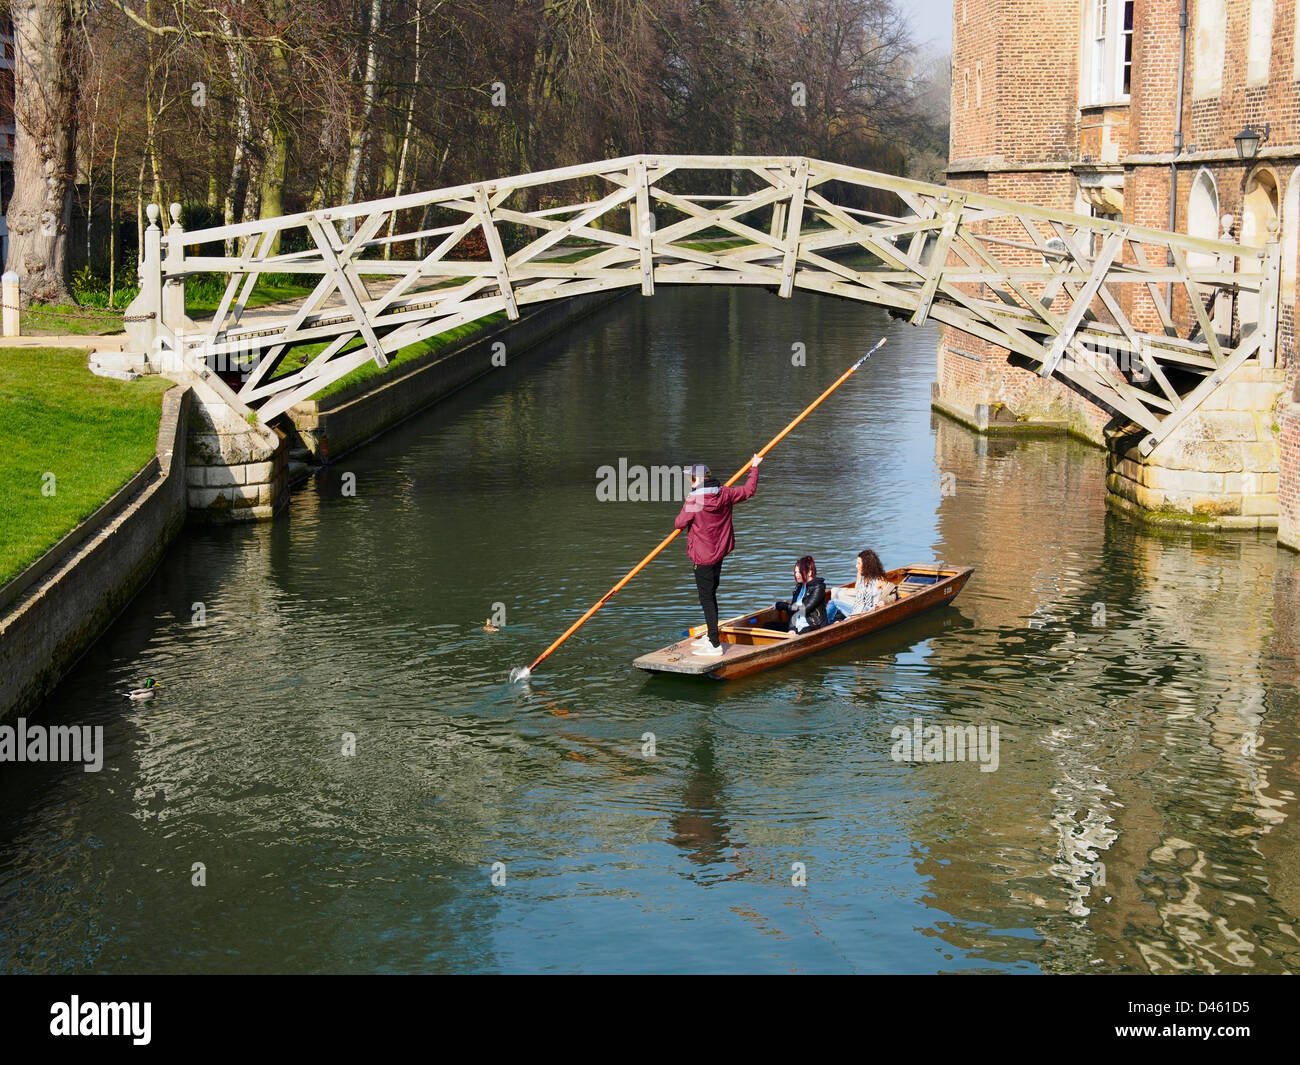 Punt under Mathematical Bridge over River Cam in Cambridge  Stock Photo